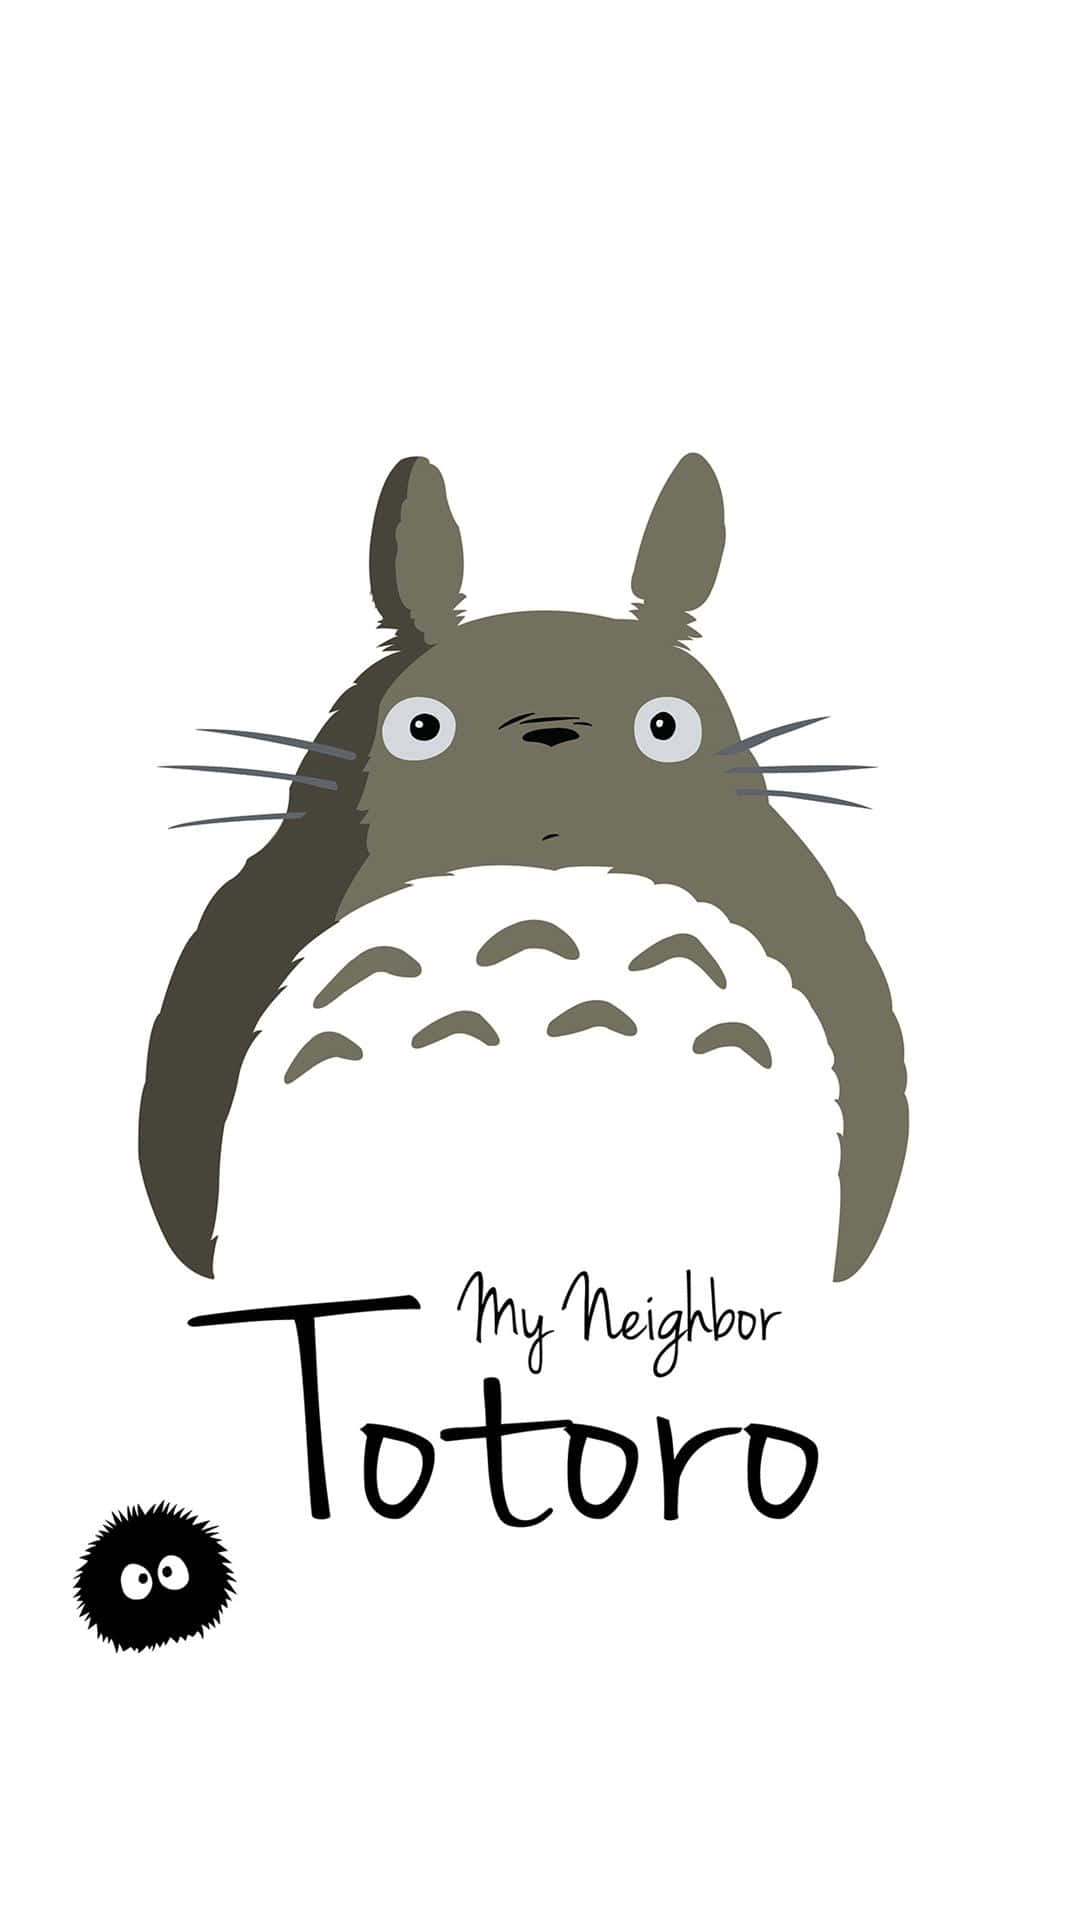 Sumérgeteen La Aventura Con Totoro